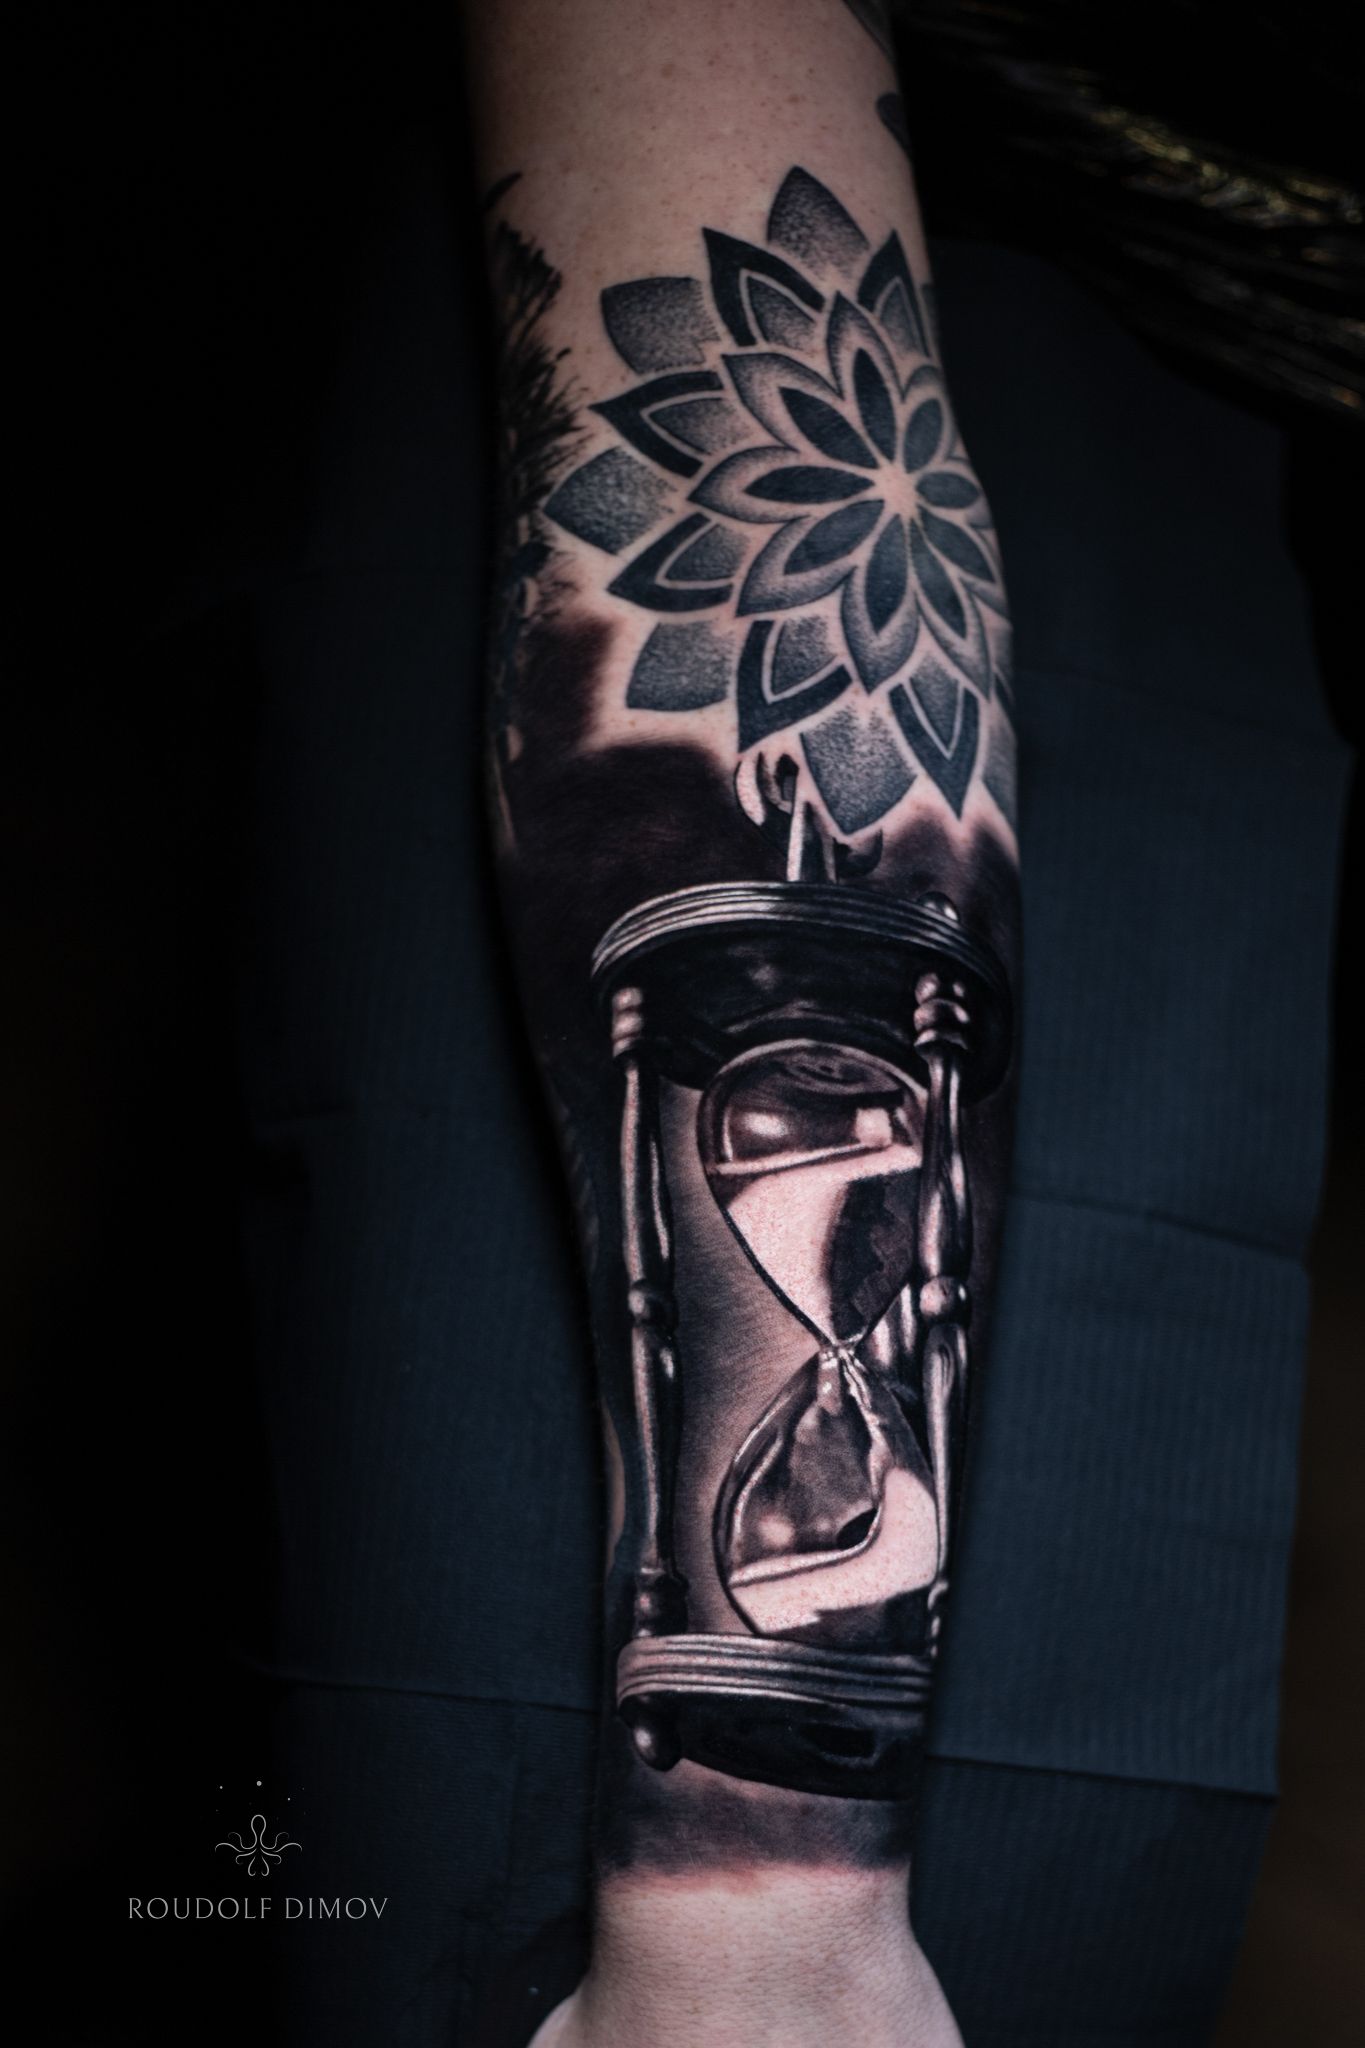 Hourglass Tattoo by 7L7B on DeviantArt